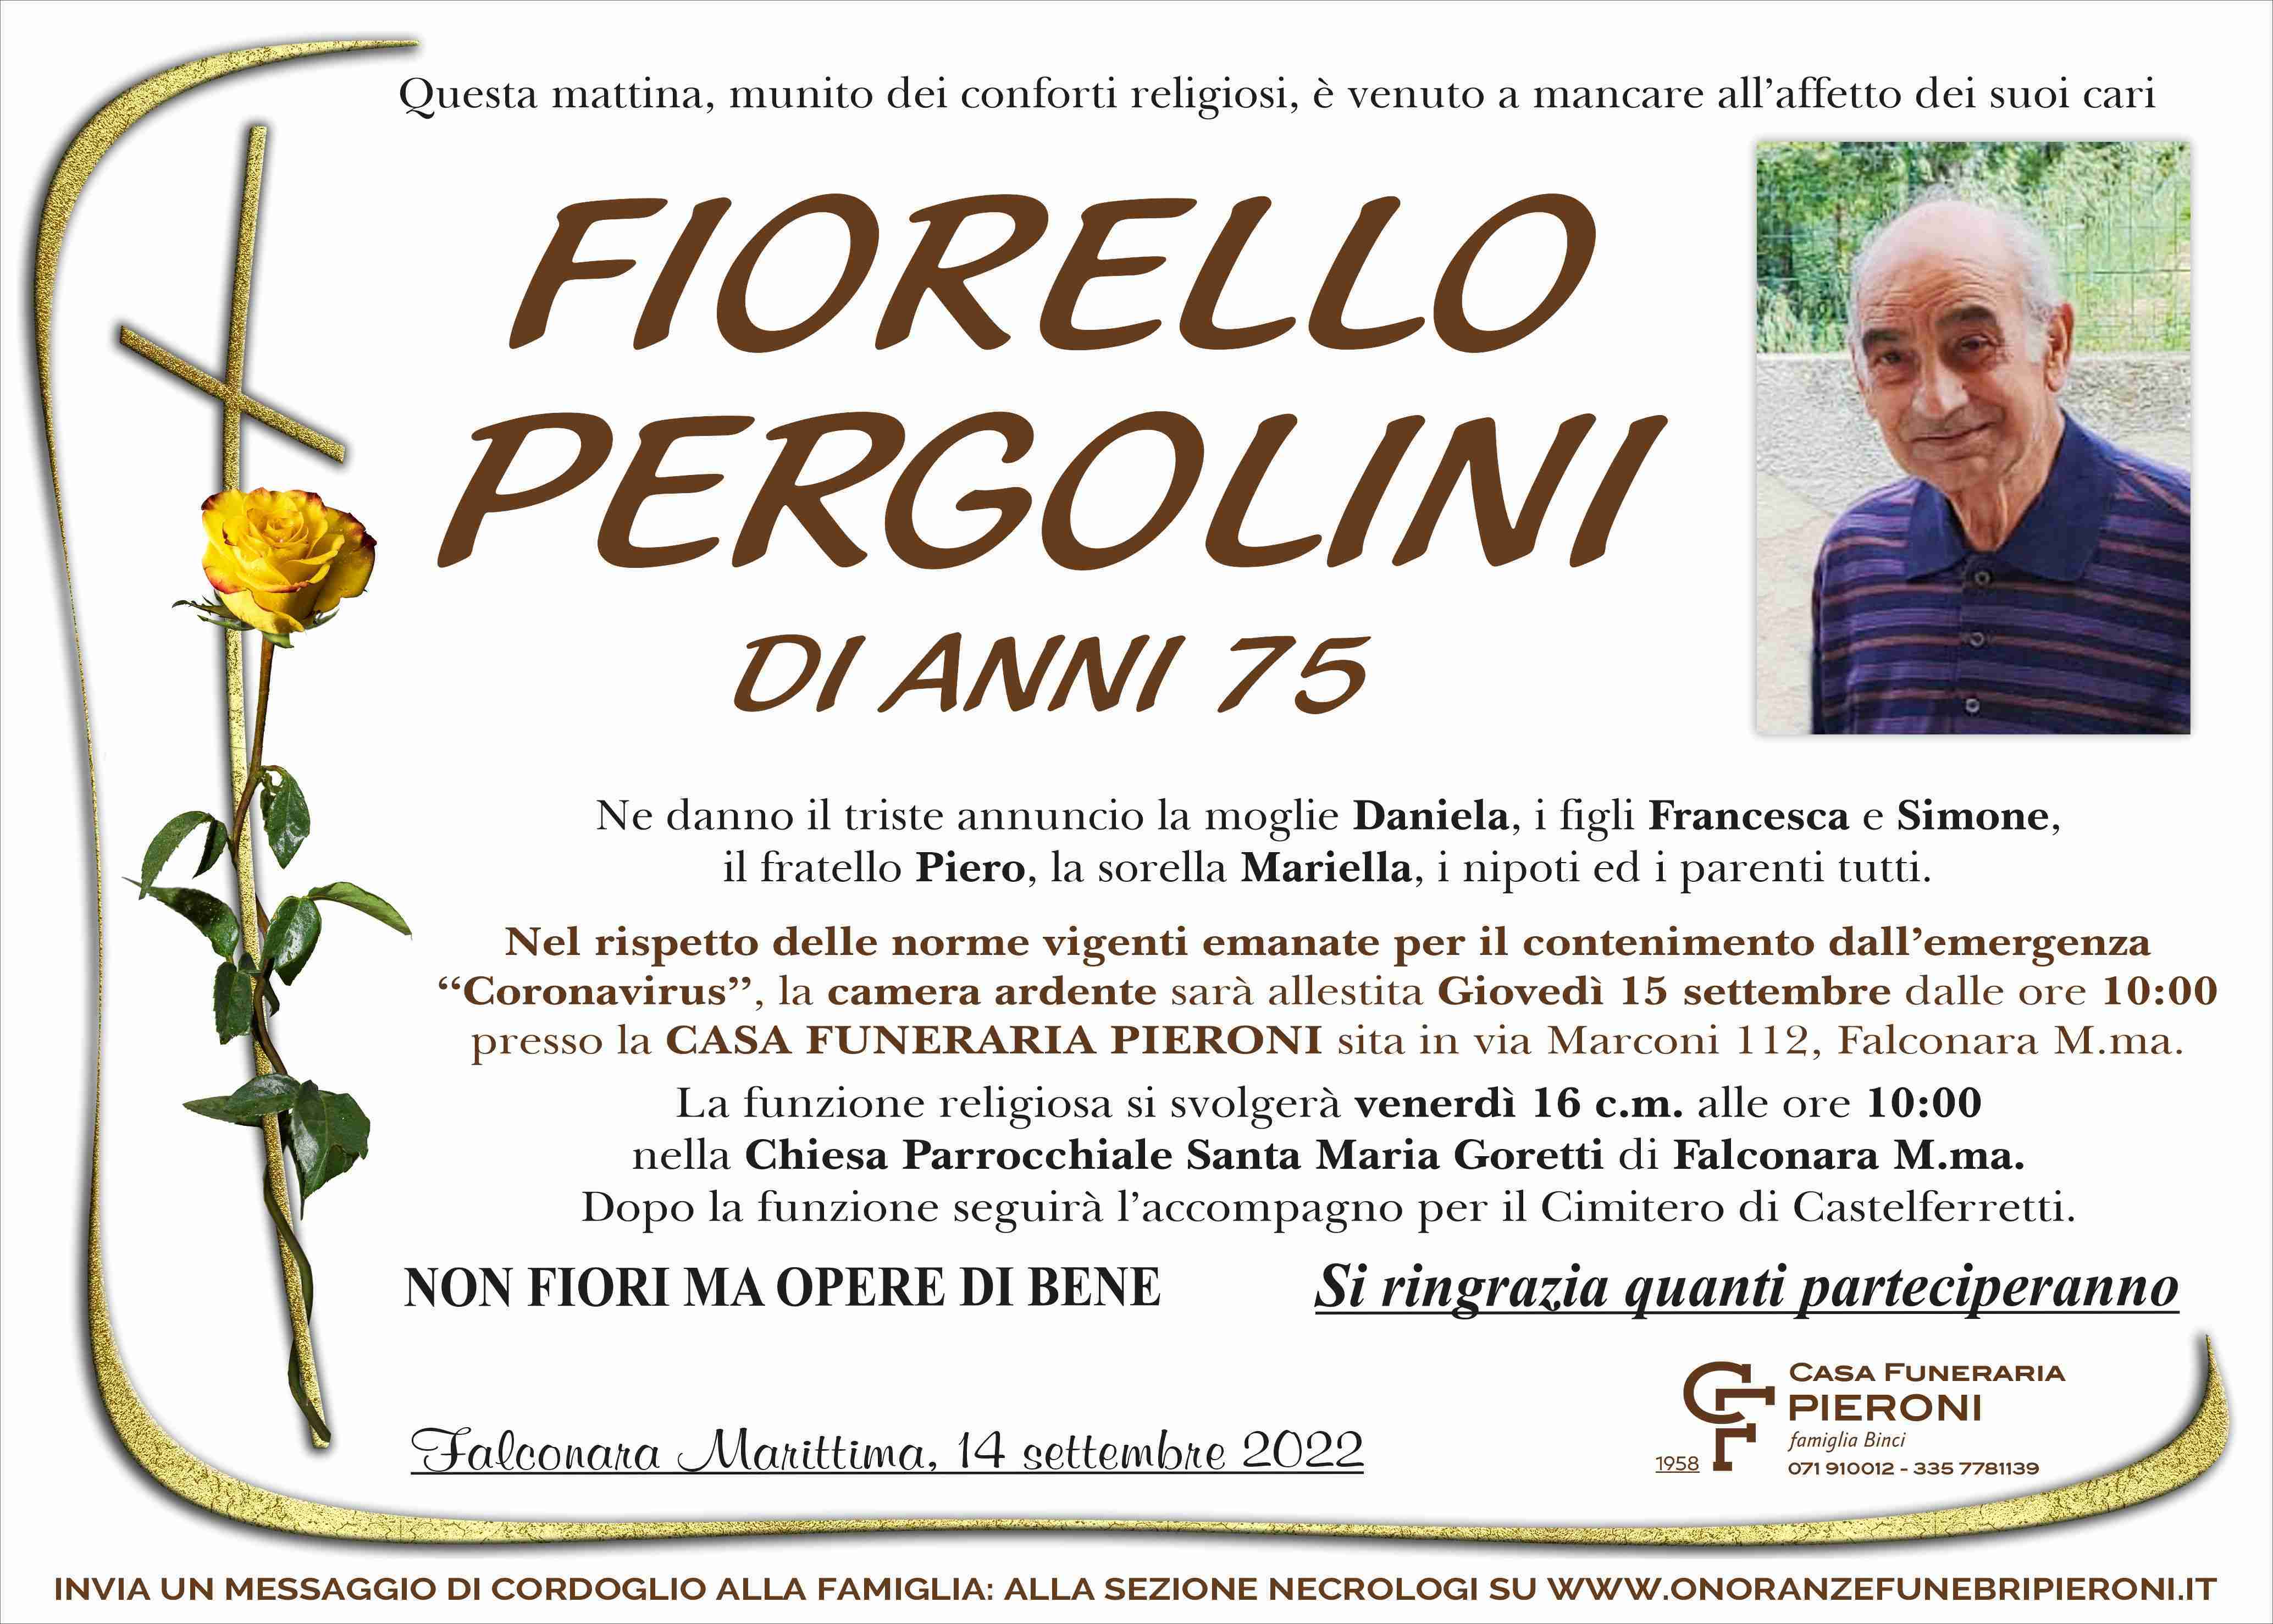 Fiorello Pergolini